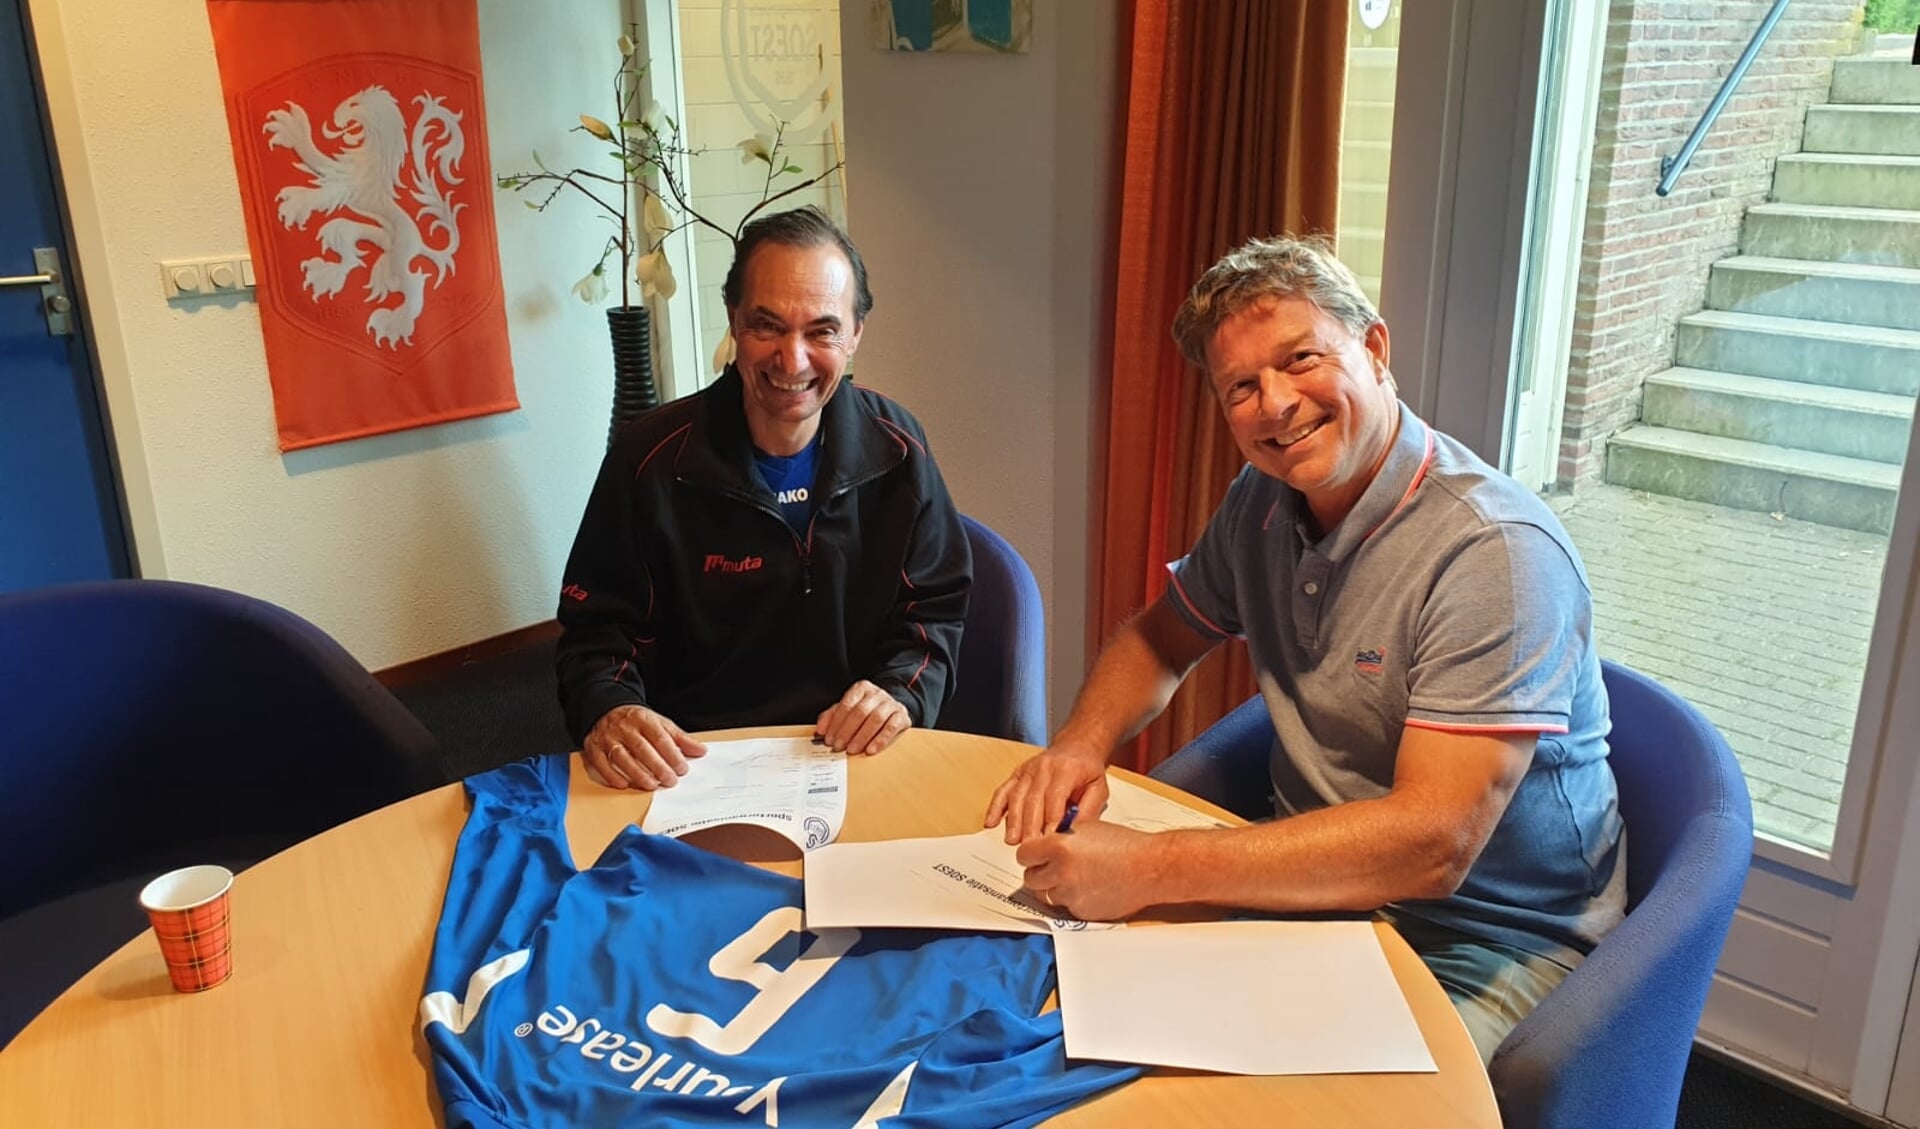 Don la Grand tekent bij SO Soest, onder toeziend oog van voorzitter Ries de Jong (r)